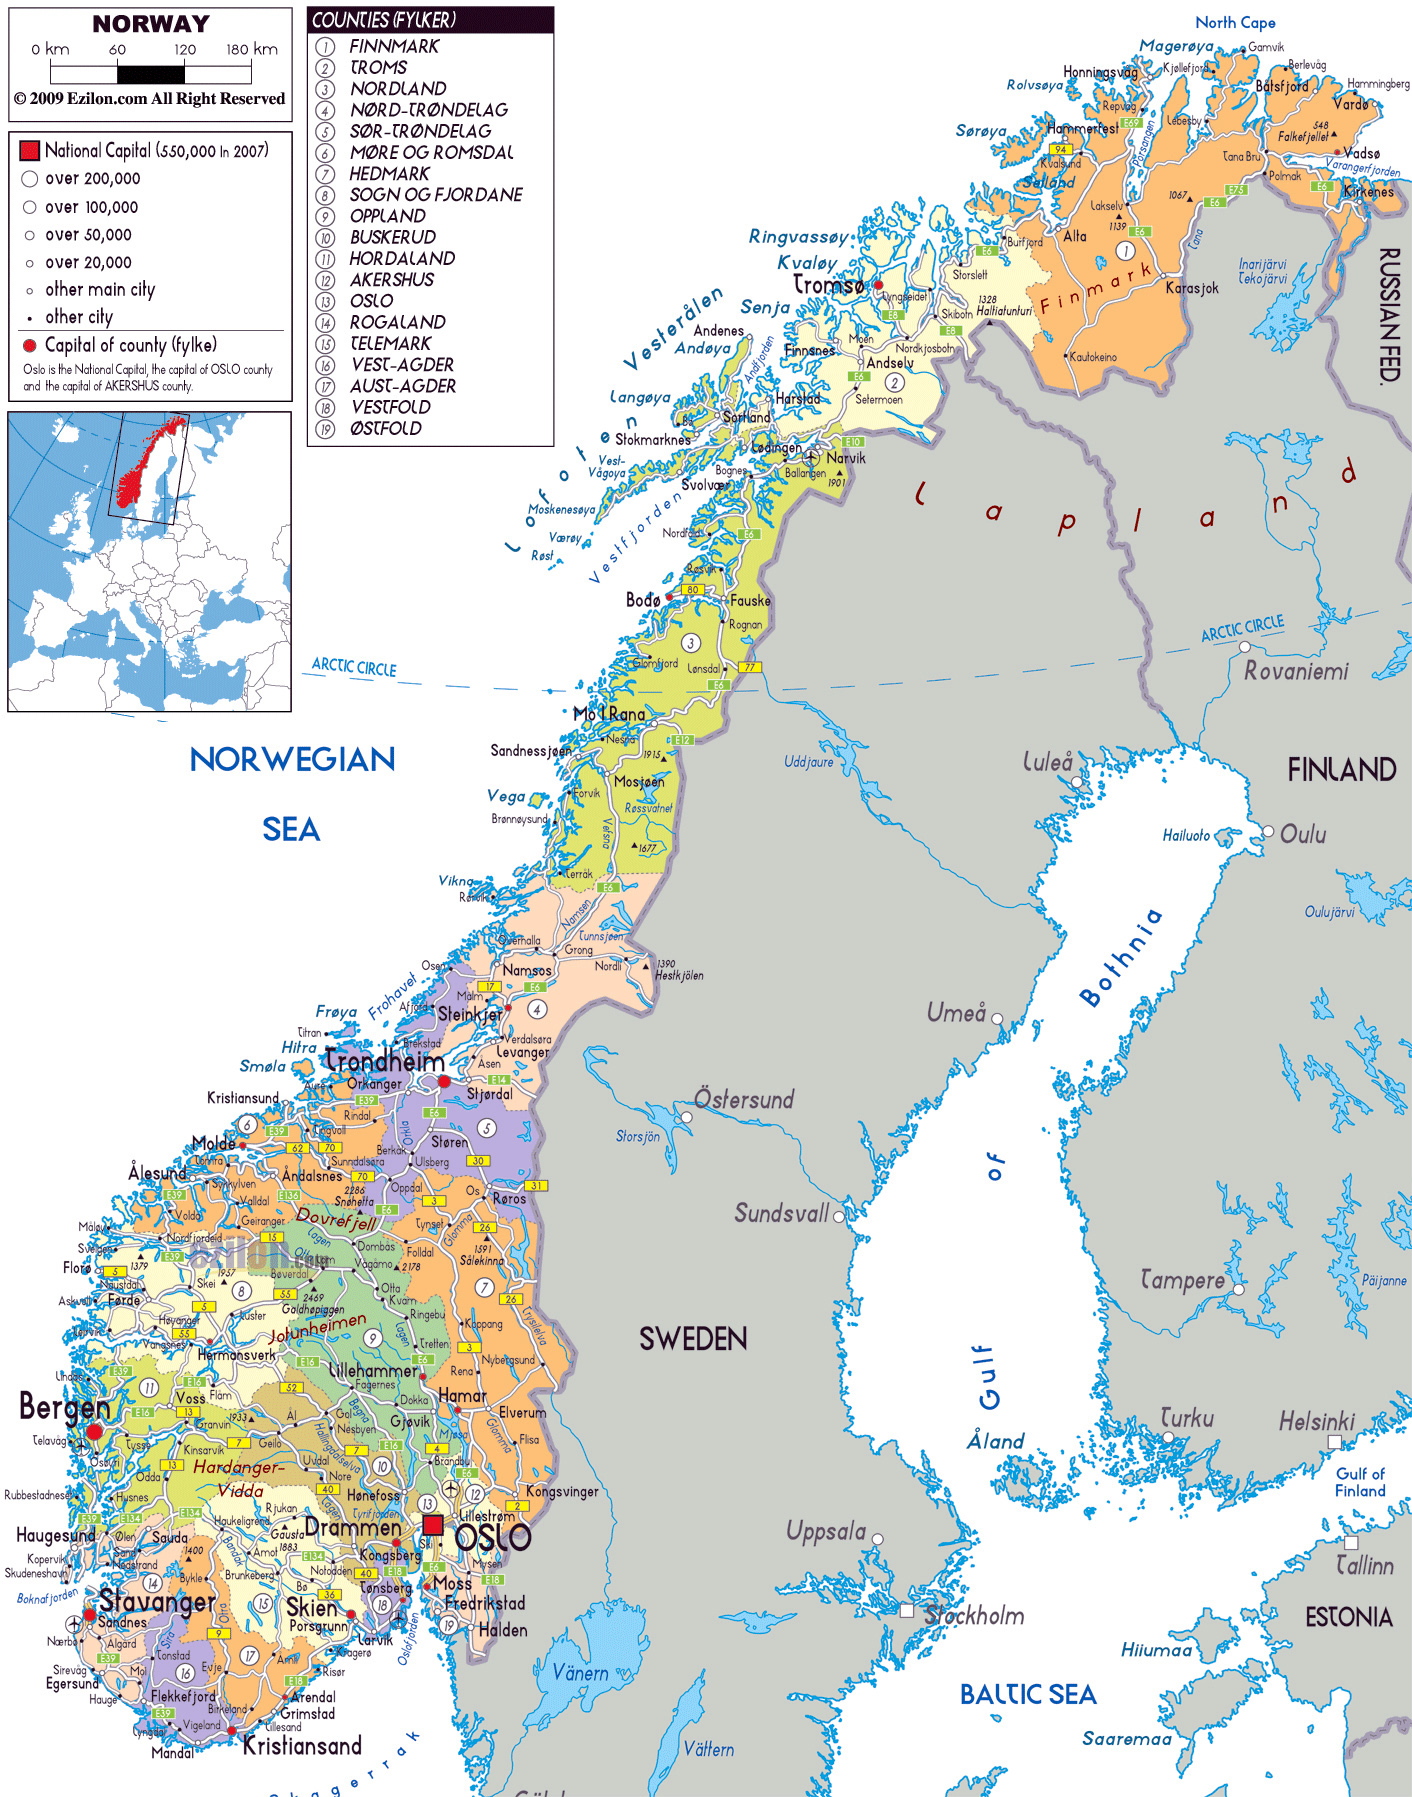 Большая политическая и административная карта Норвегии с дорогами, городамии аэропортами